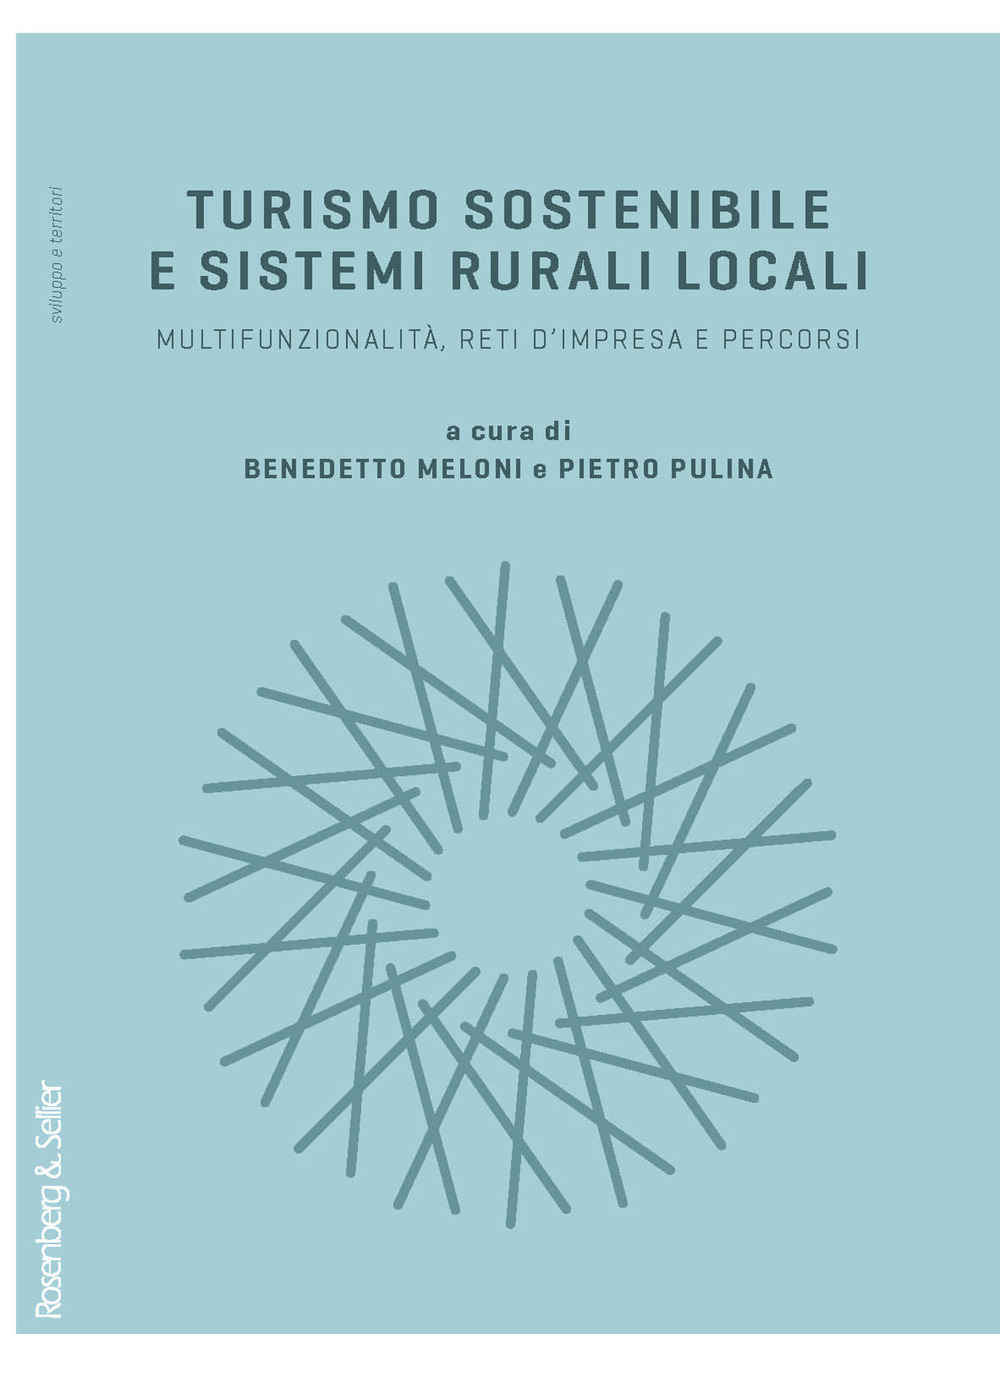 Turismo sostenibile e sistemi rurali locali. Multifunzionalità, reti d'impresa e percorsi